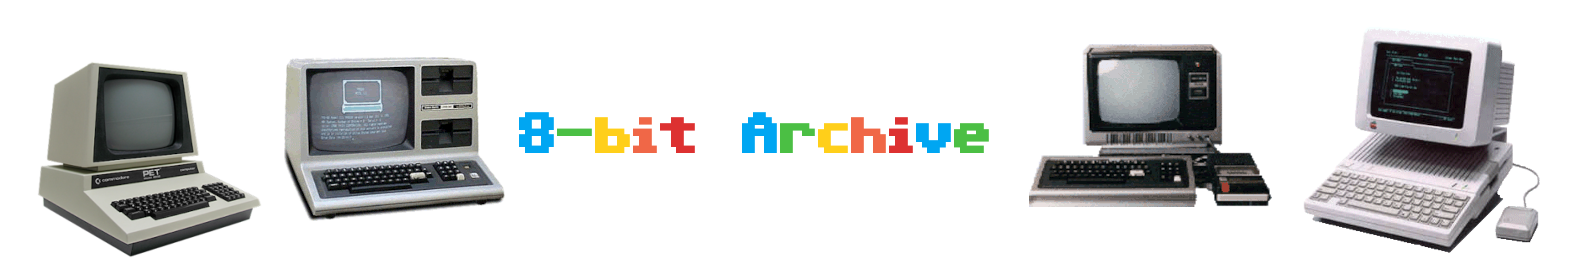 8-bit Archive